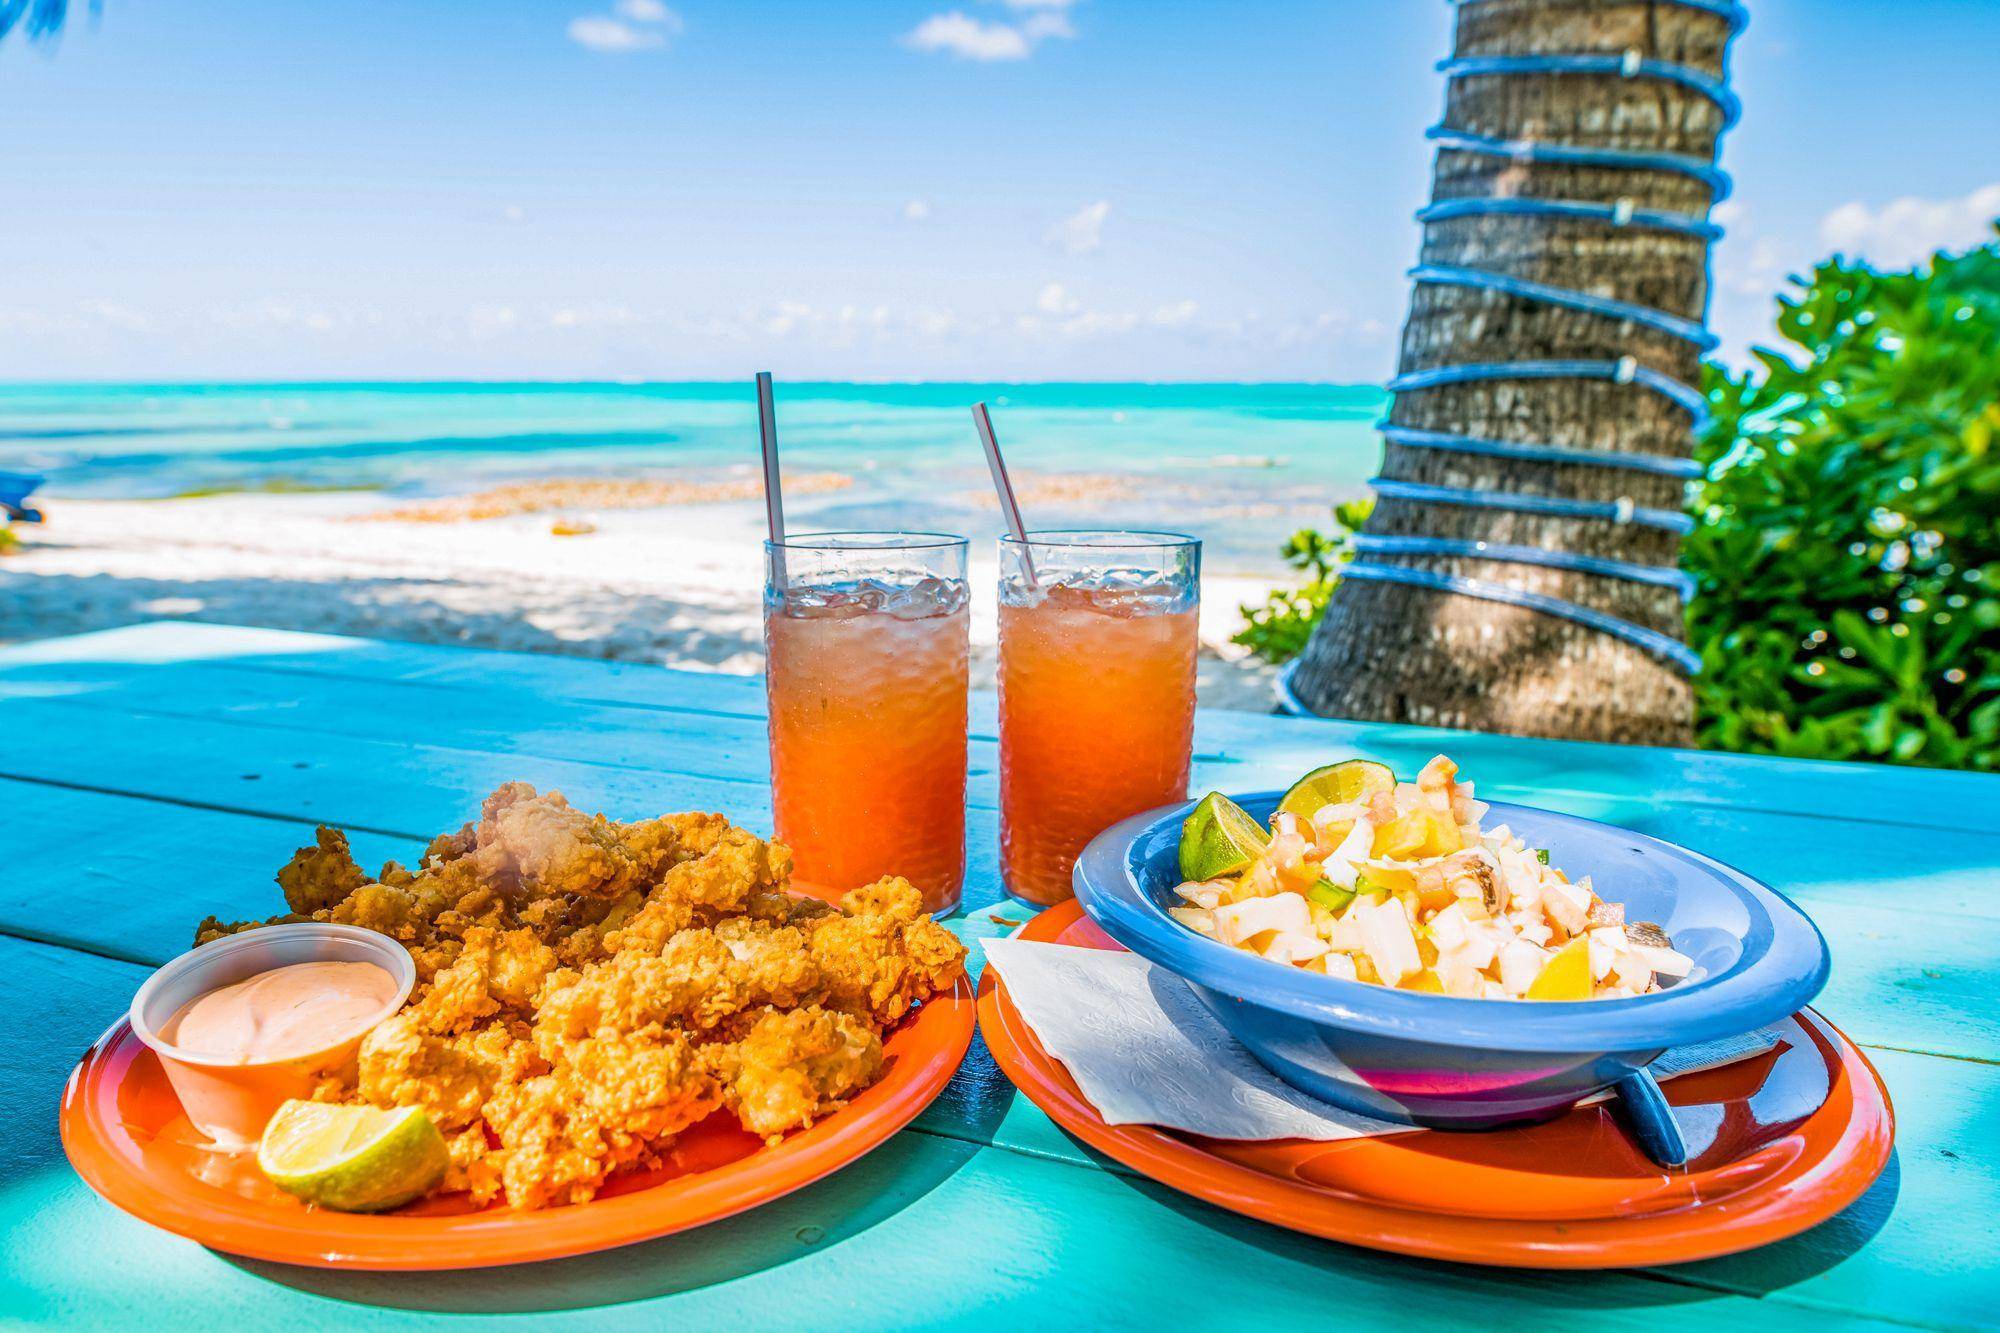 巴哈马美食特辑:去巴哈马度假,一定要品尝这些美食